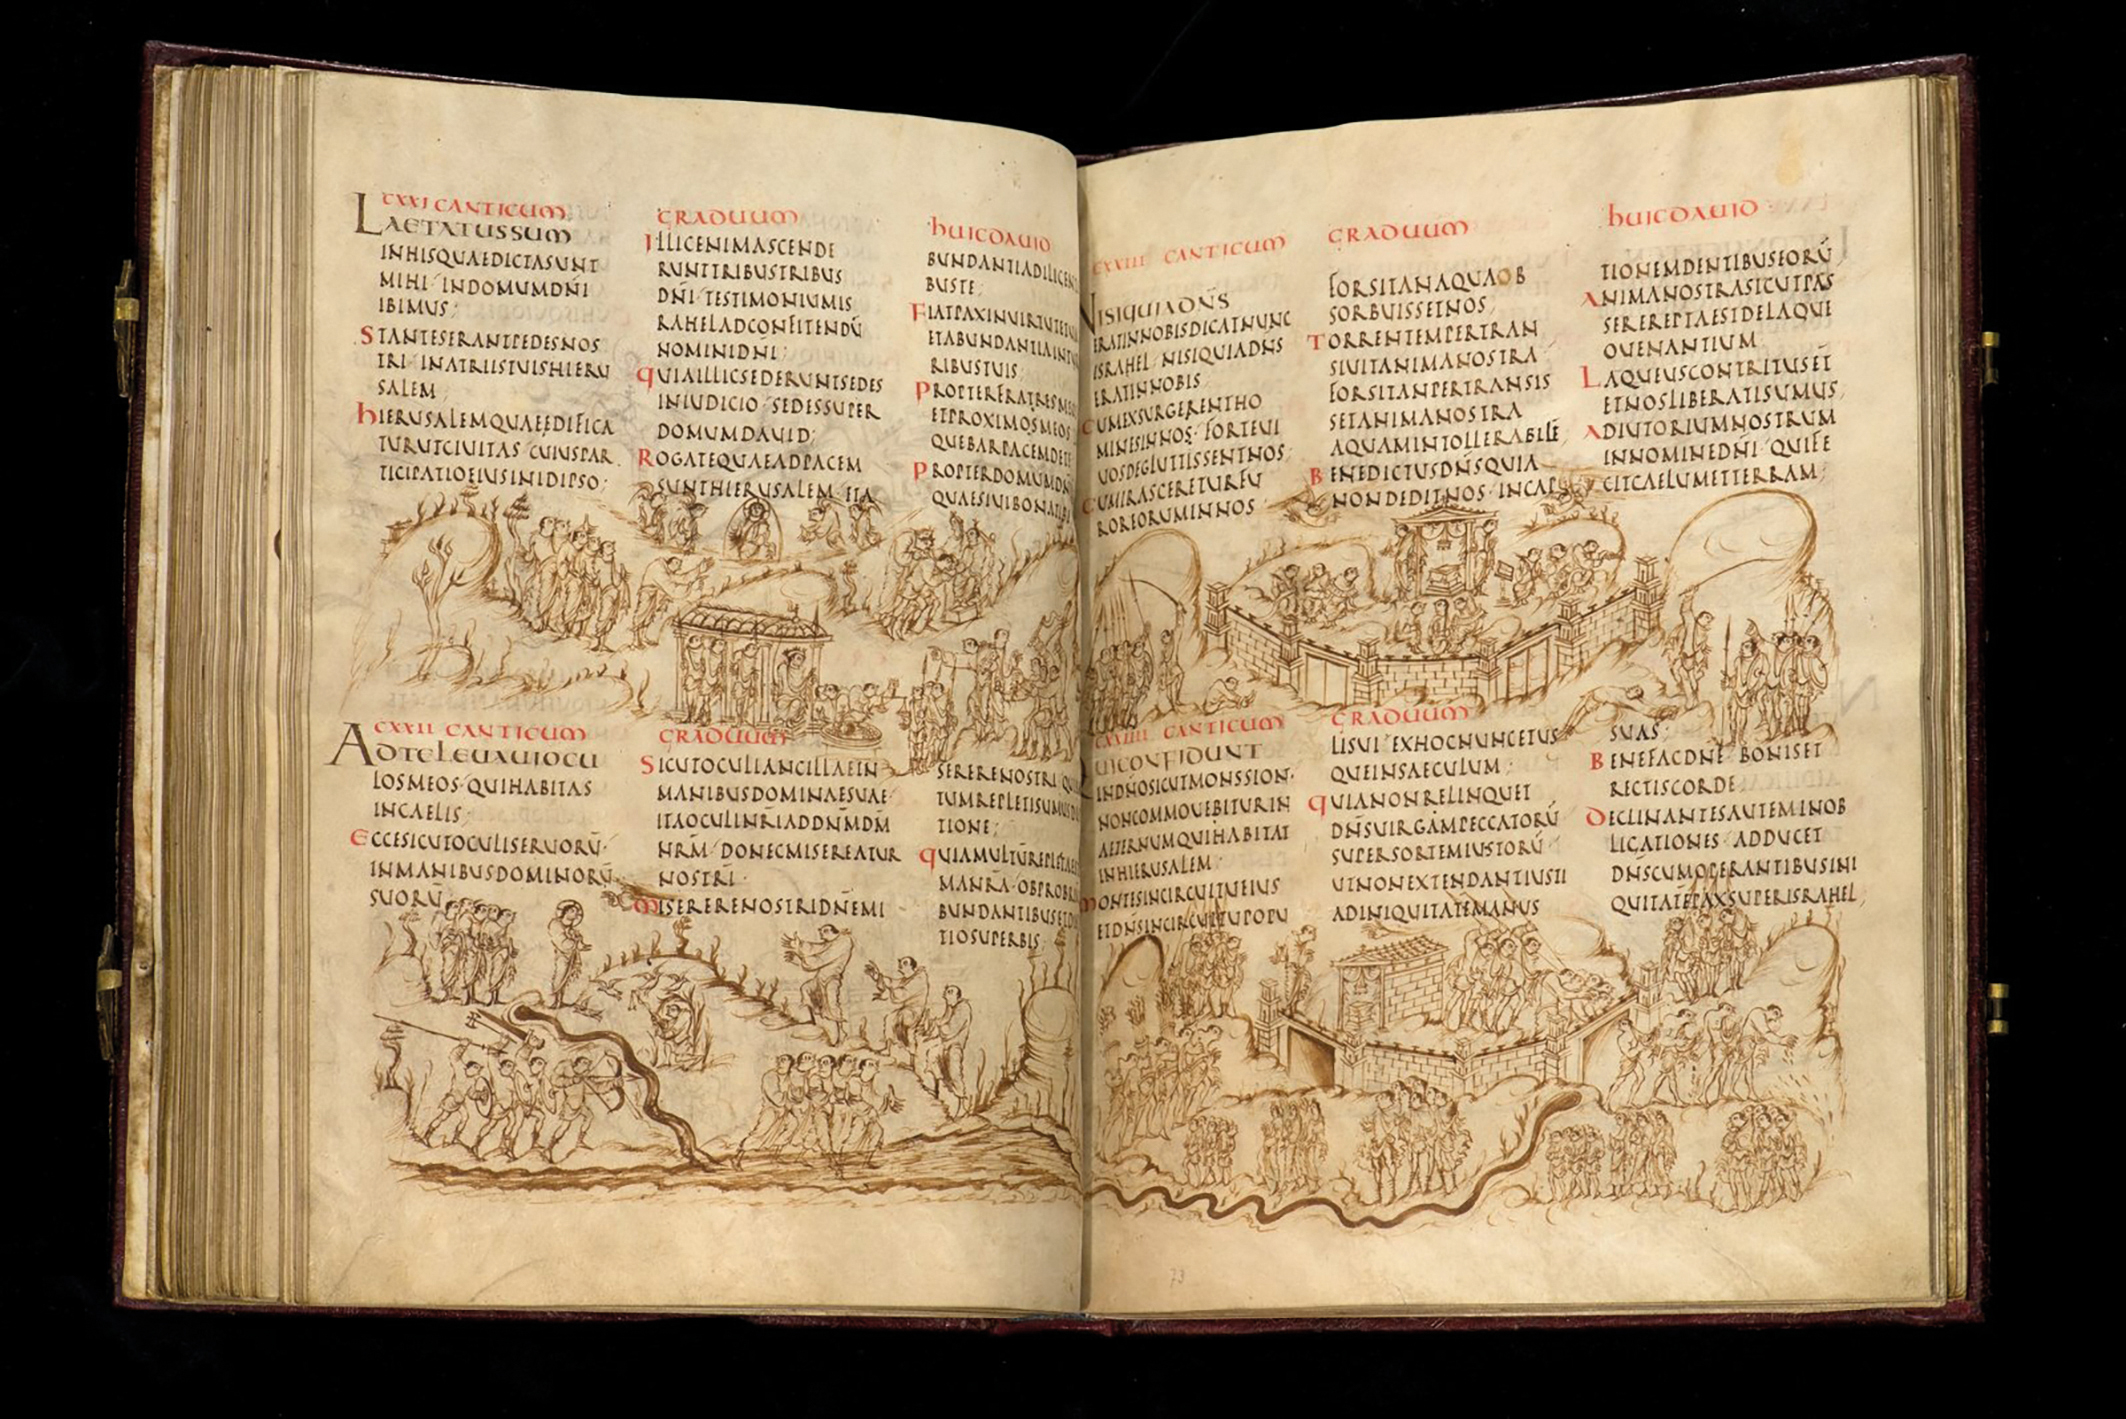 Een blik op het Utrechts Psalter. Het psalmboek bevat de teksten van alle 150 psalmen en van zestien zogenaamde cantica, hymnes uit de bijbel, die in de middeleeuwen vaak aan het psalter werden toegevoegd. Het is vernoemd naar en in bezit van de Universiteitsbibliotheek Utrecht, waar het in de 19e eeuw ontdekt werd. 